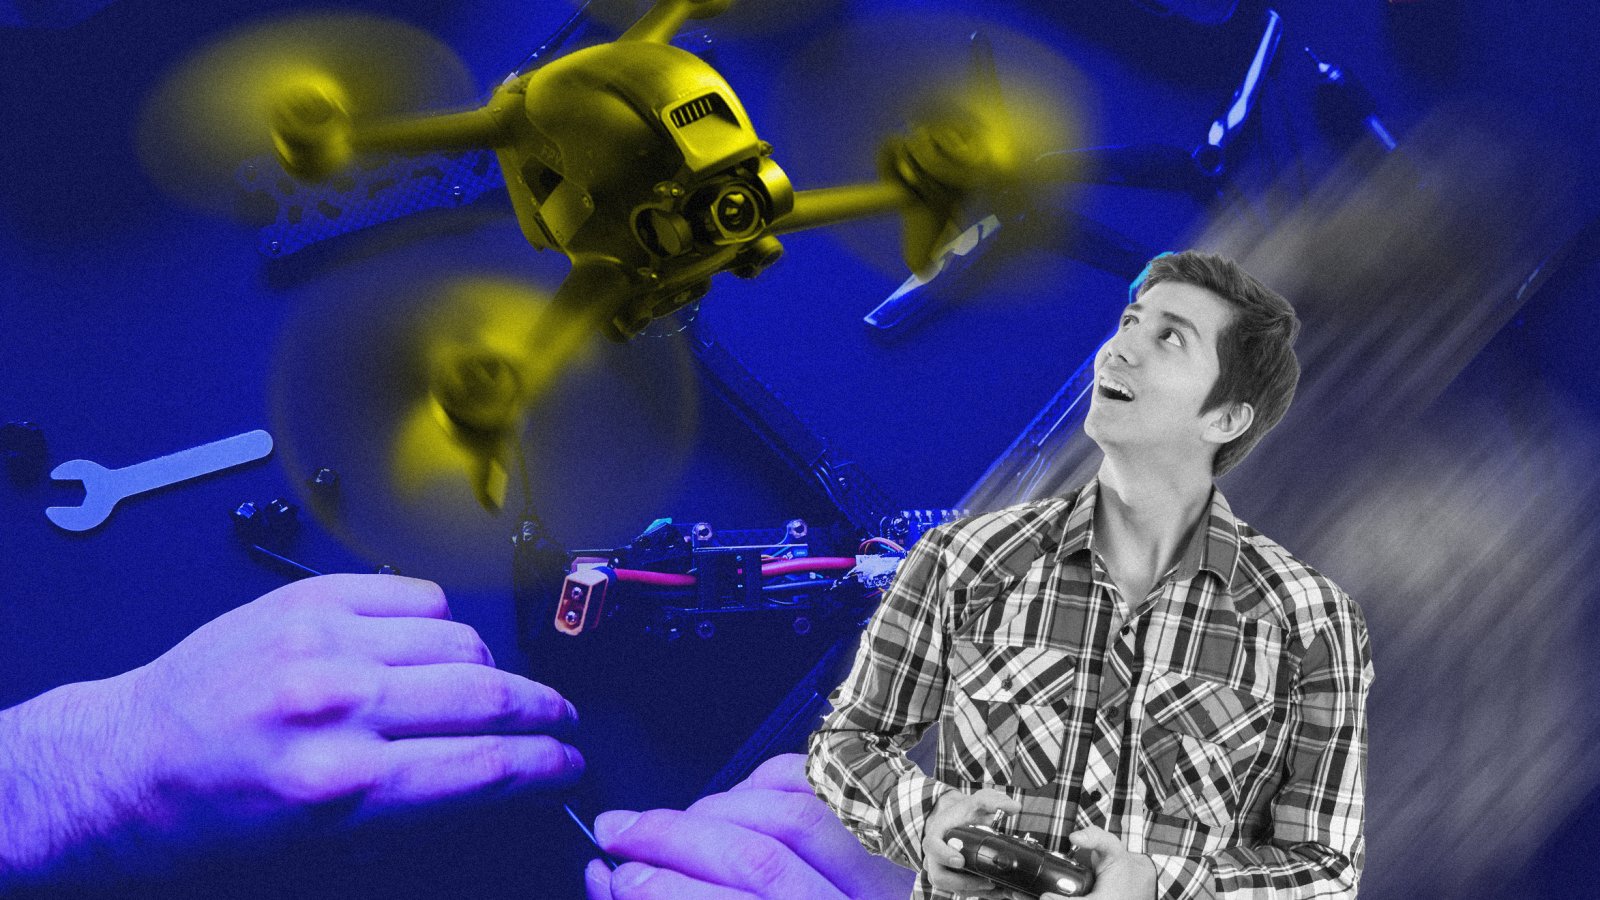 Эволюция дронов. От игрушек к рою под управлением ИИ